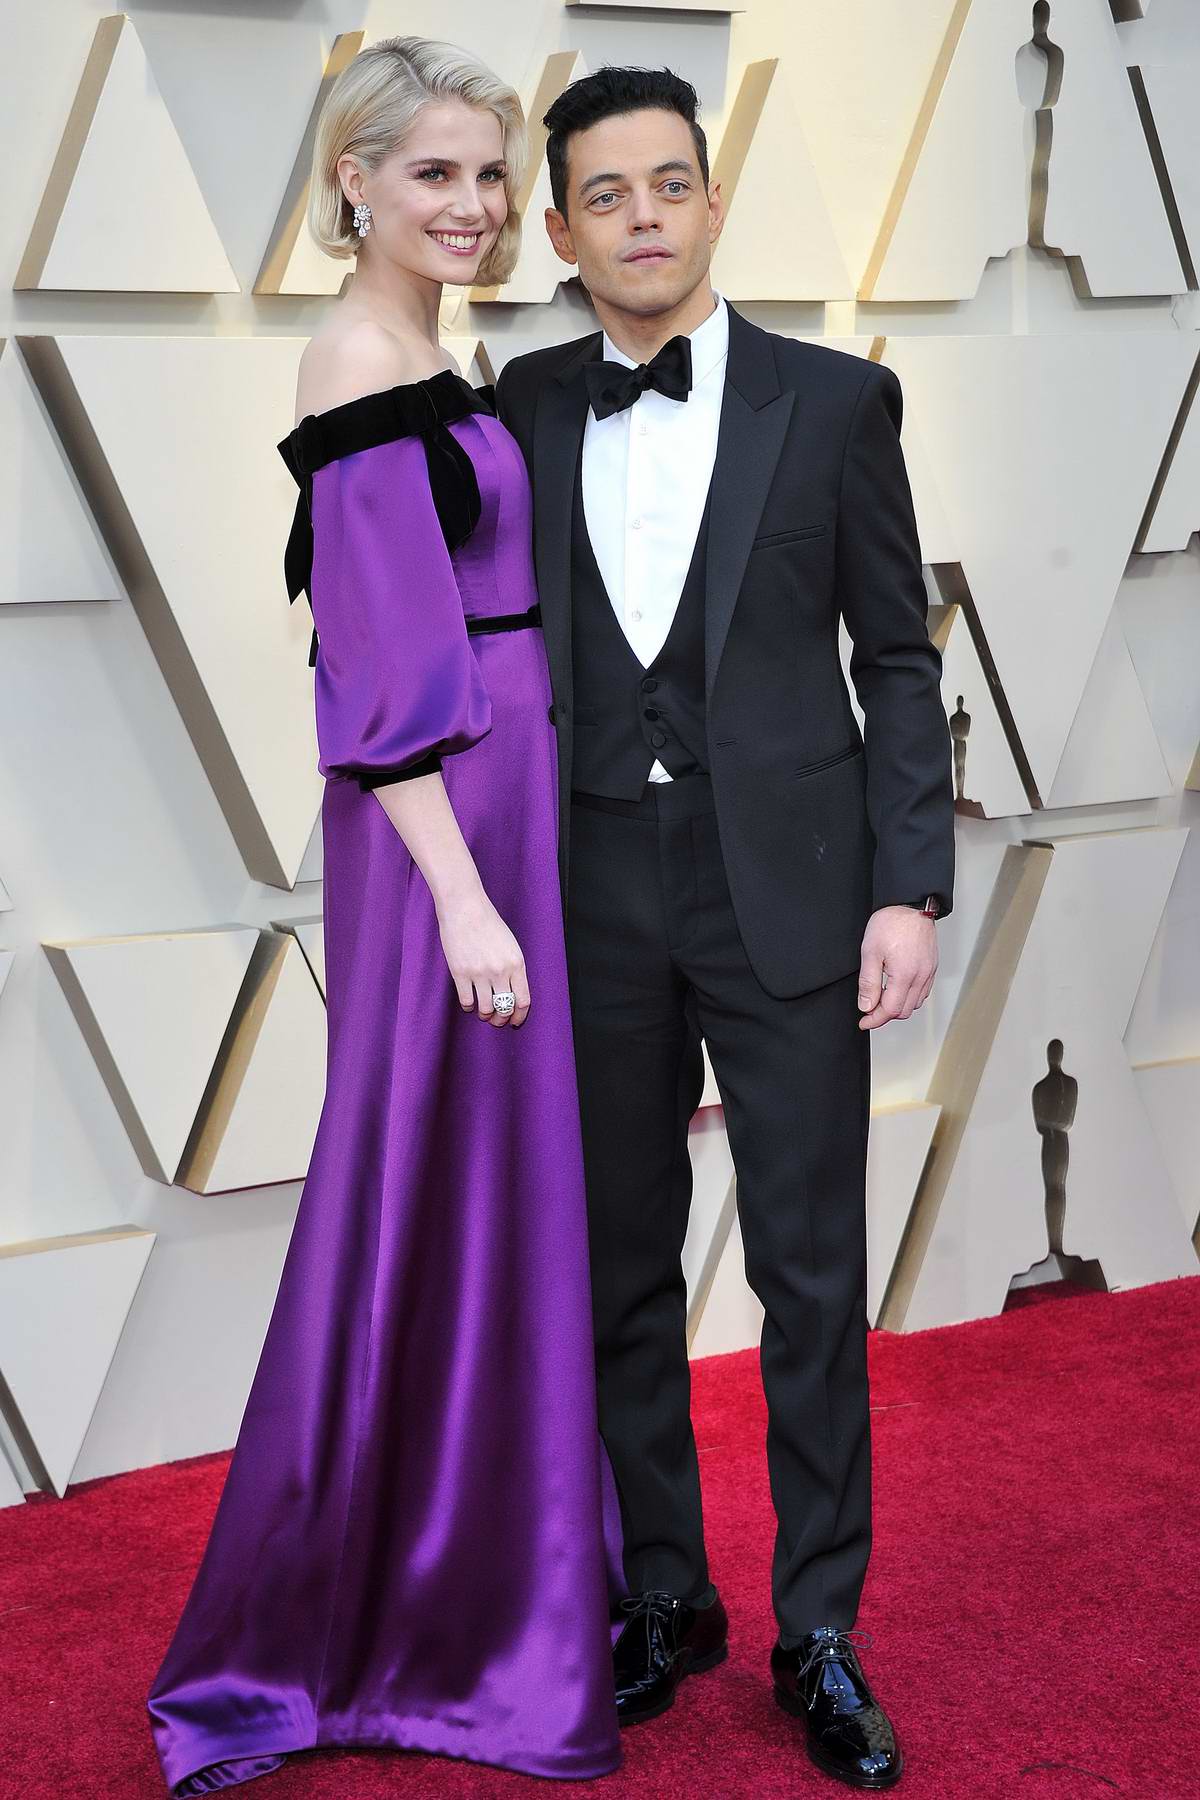 Lucy Boynton Attends The St Annual Academy Awards Oscars Held